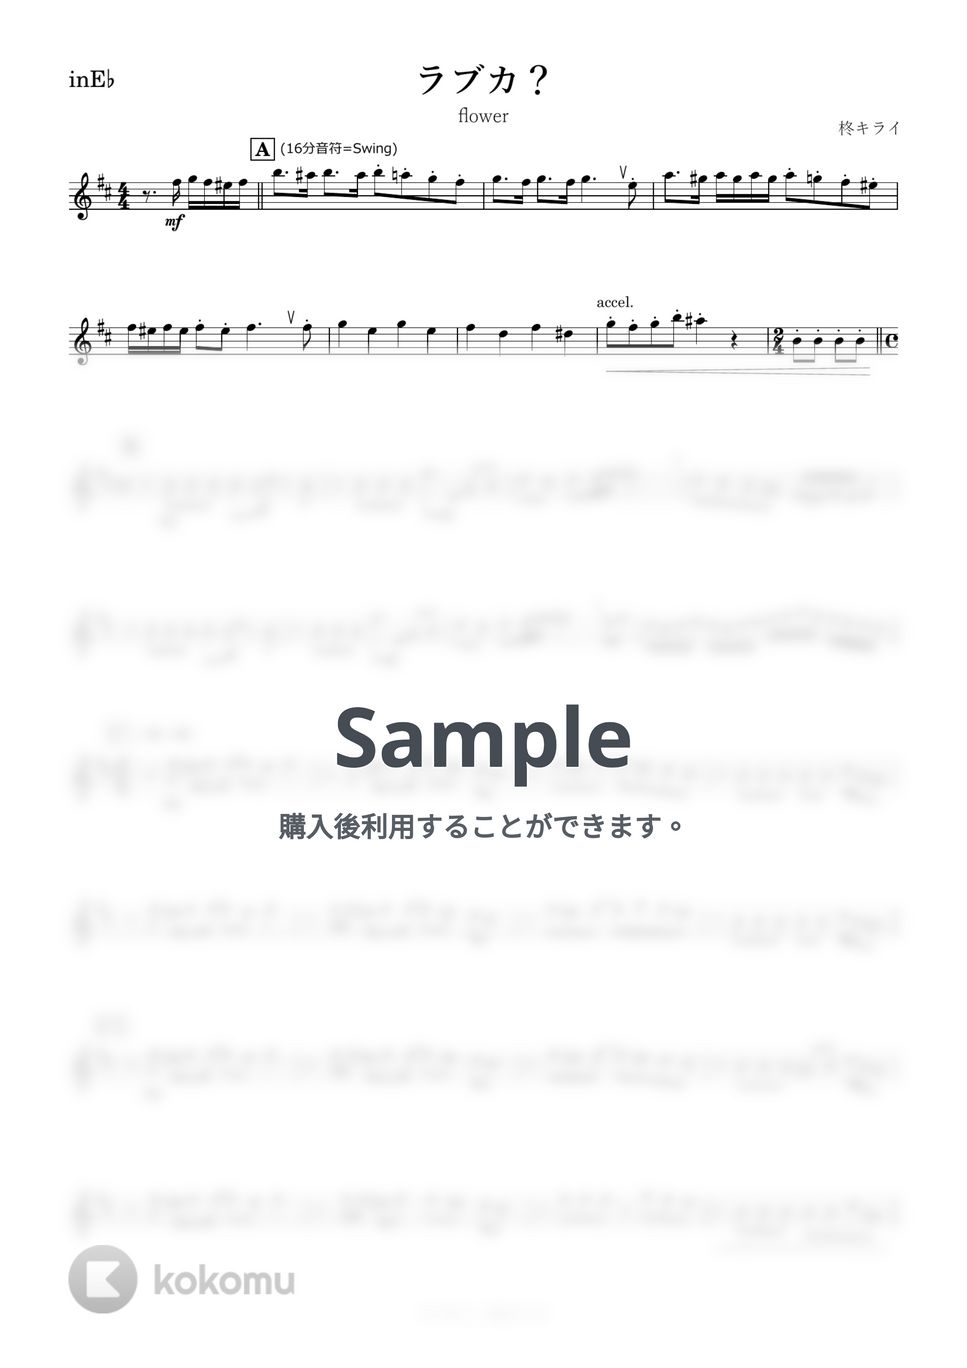 柊キライ - ラブカ？ (E♭) by kanamusic